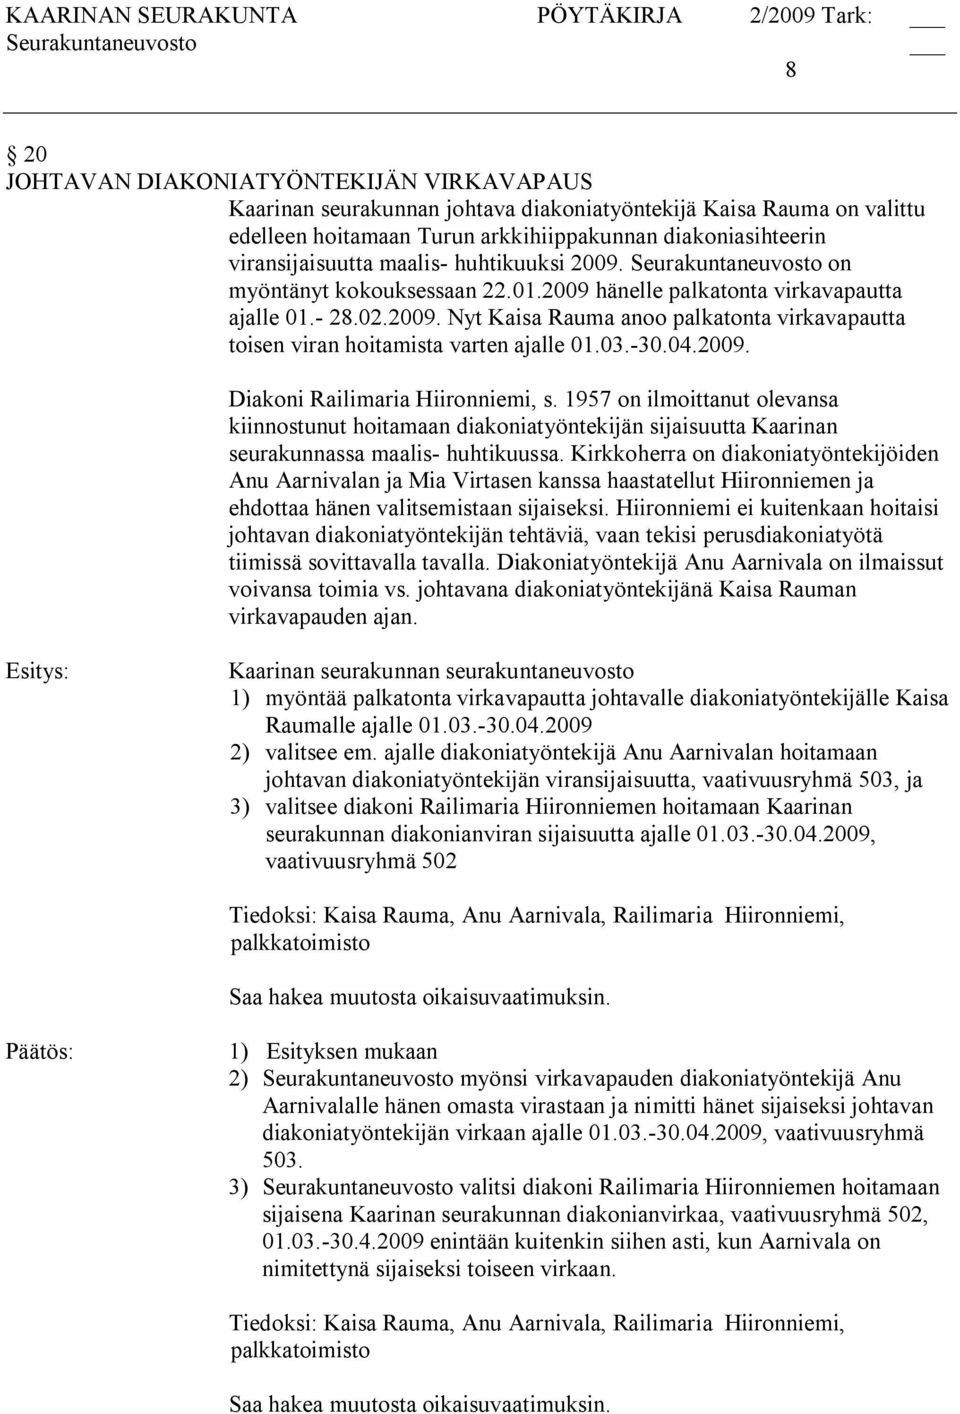 03. 30.04.2009. Diakoni Railimaria Hiironniemi, s. 1957 on ilmoittanut olevansa kiinnostunut hoitamaan diakoniatyöntekijän sijaisuutta Kaarinan seurakunnassa maalis huhtikuussa.